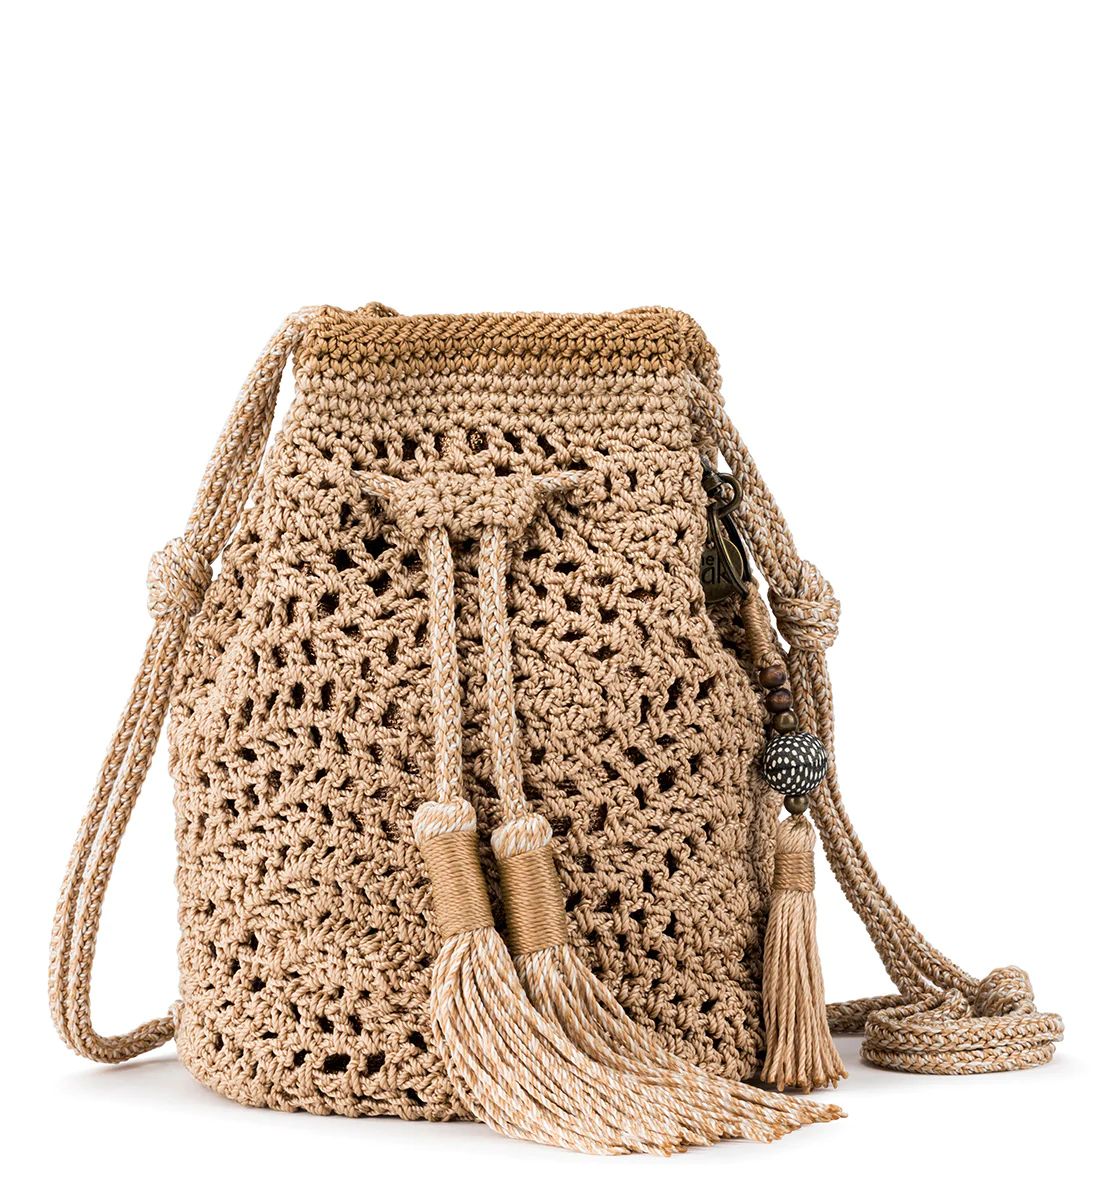 Sayulita Crochet Drawstring Bucket | The Sak